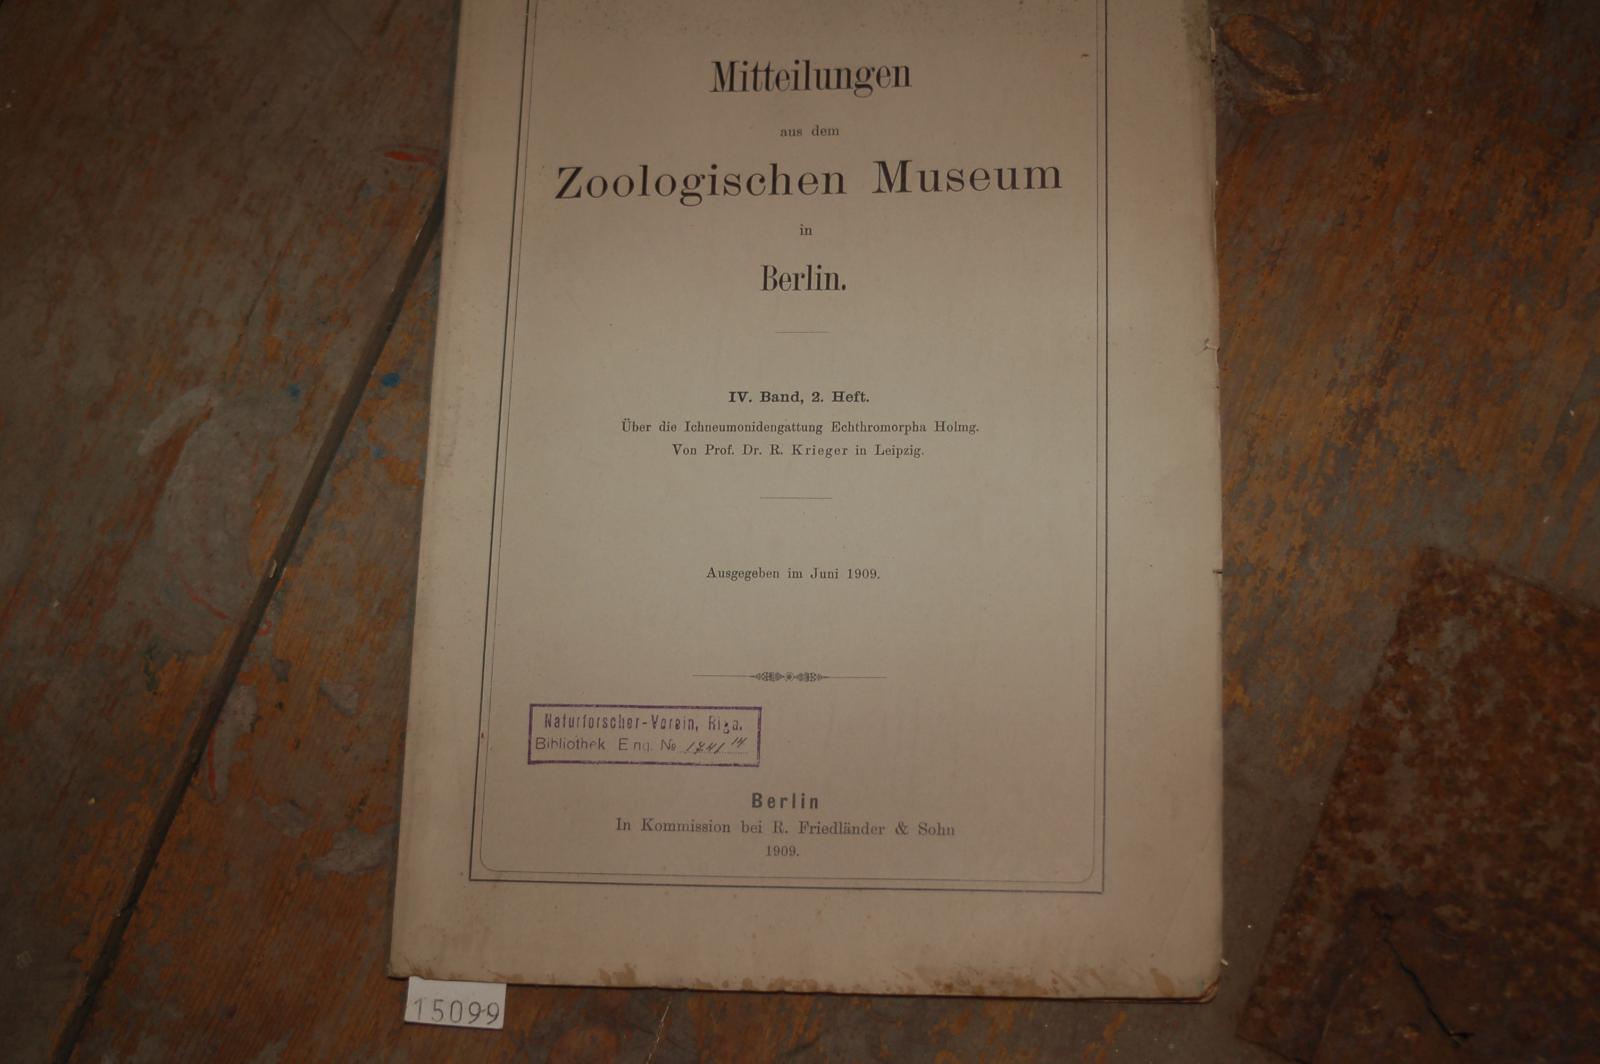 Zeitschrift  Mitteilungen aus dem zoologischen Museum in Berlin 4. Band 2. Heft   Über die Ichneumonidengattung Echthromorpha Holmg. 